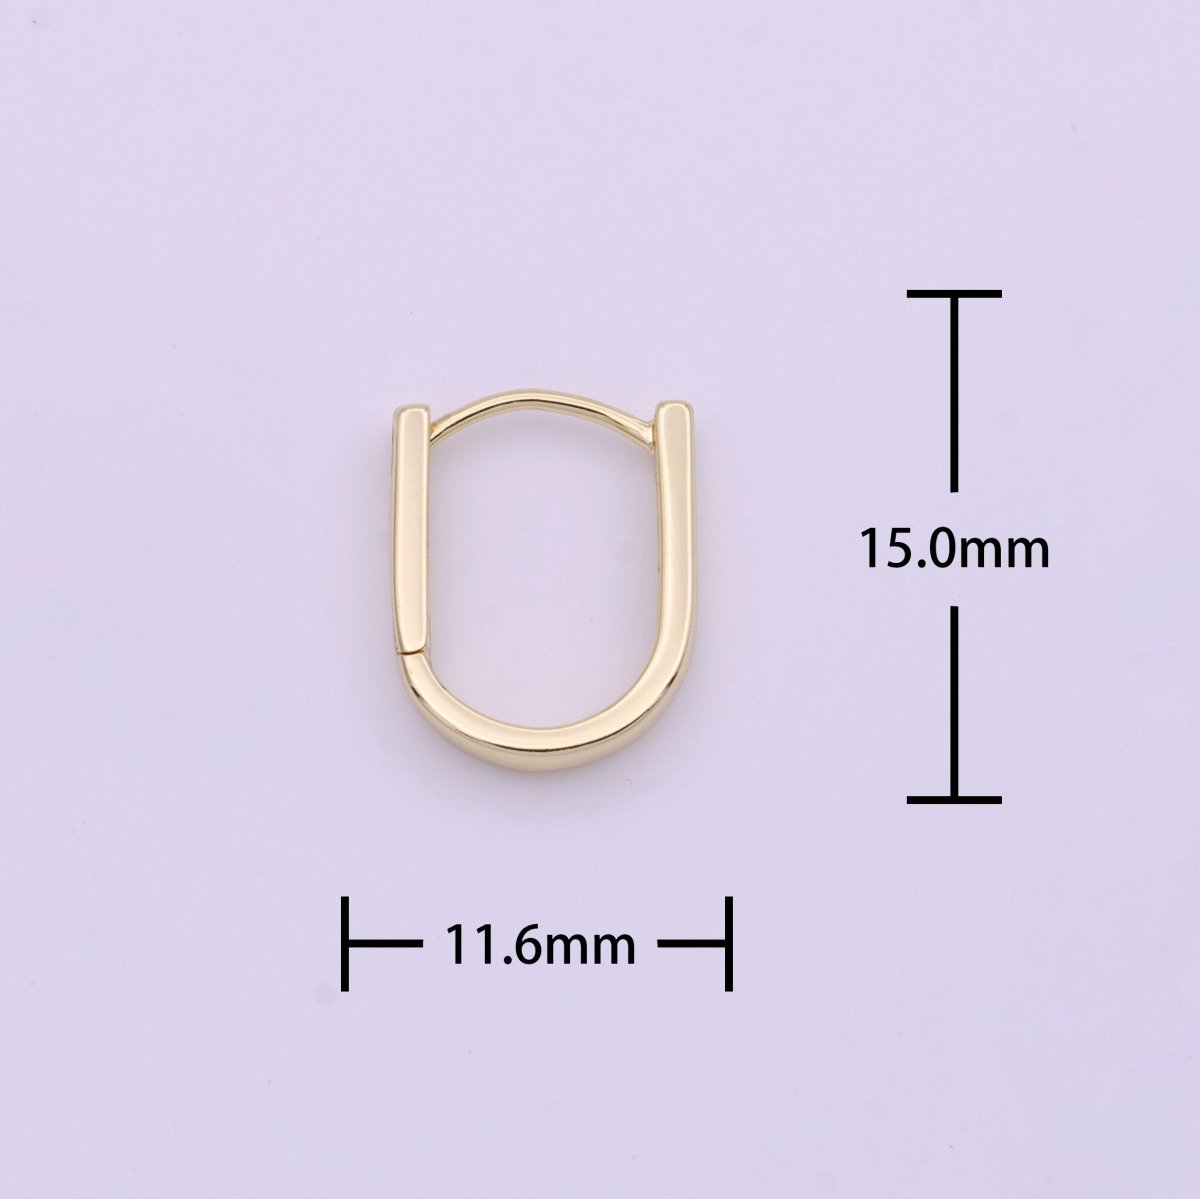 14K Gold Filled Oblong Rectangle Earrings Oval Shape Earrings Minimalist Hoop Earrings Y-286 - DLUXCA